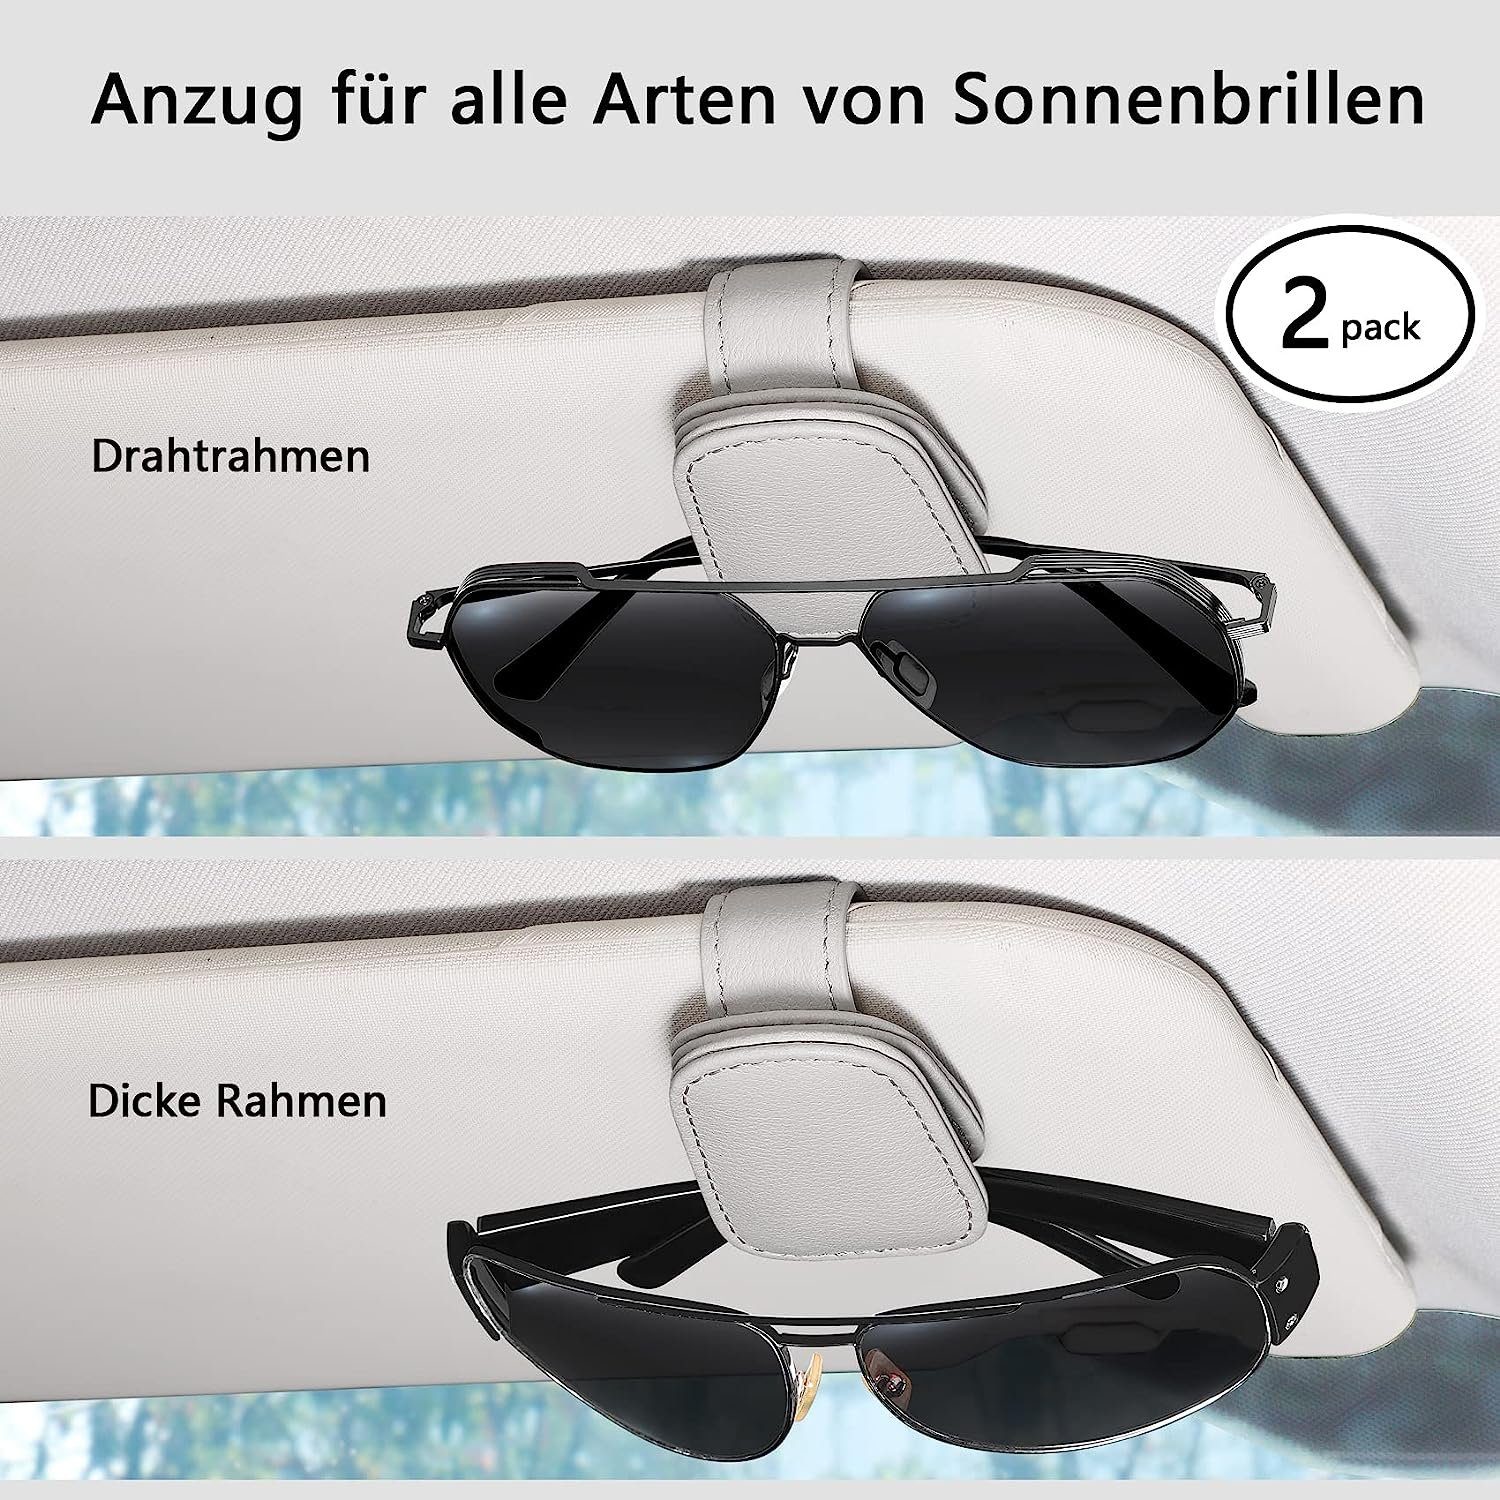 NUODWELL Autosonnenschutz Visier Pack Auto Grau Sonnenbrillenhalterung 2 Brillenhalter Sonnenblende